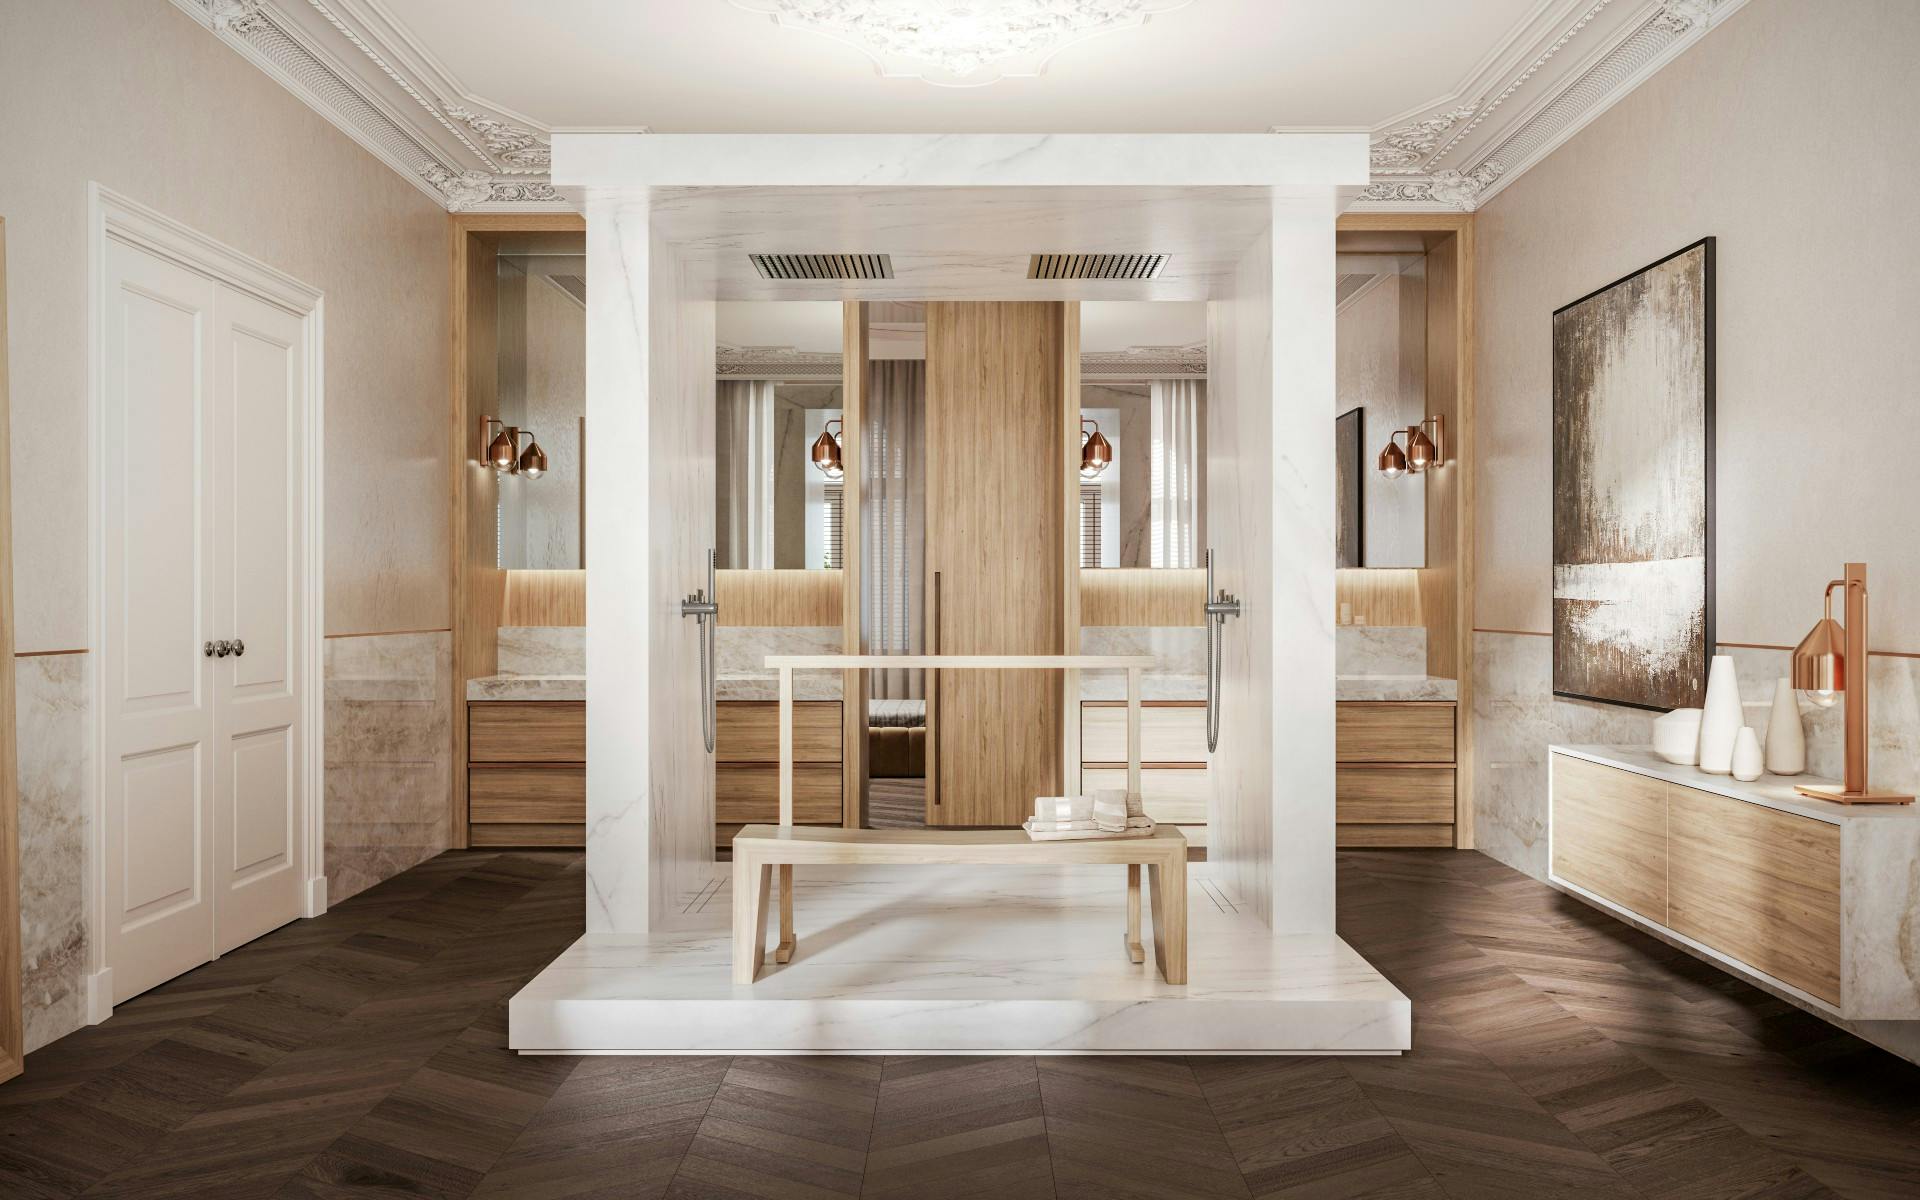 Numéro d'image 39 de la section actuelle de Sawaru: a sensory bathroom designed by Claudia Afshar to appeal to the sense of touch de Cosentino France